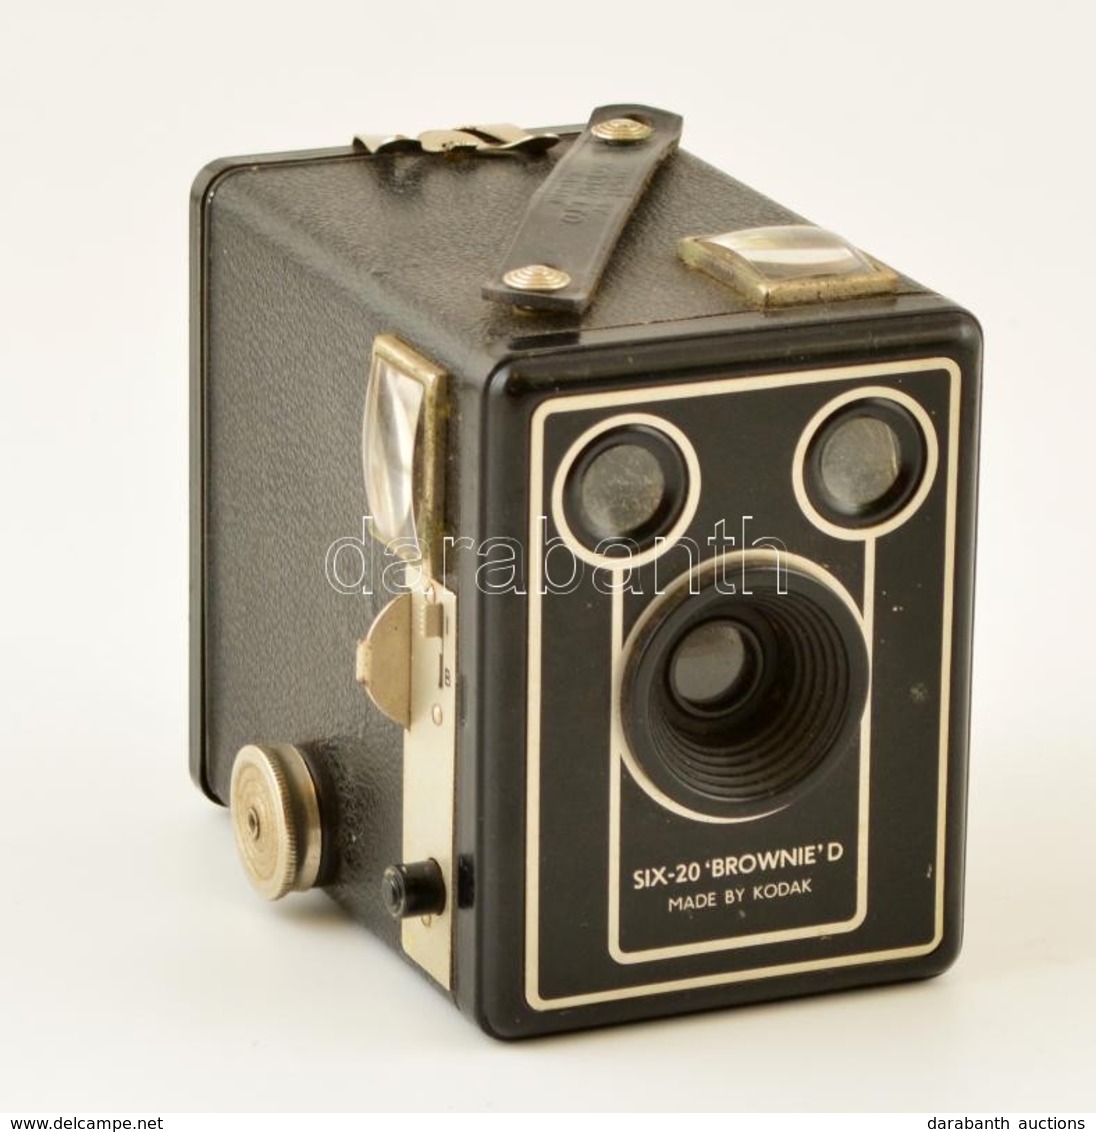 Kodak Brownie SIX-20 Model D Box Fényképezőgép, Működőképes, Szép állapotban / Vintage Kodak Brownie Box Camera, In Good - Fotoapparate